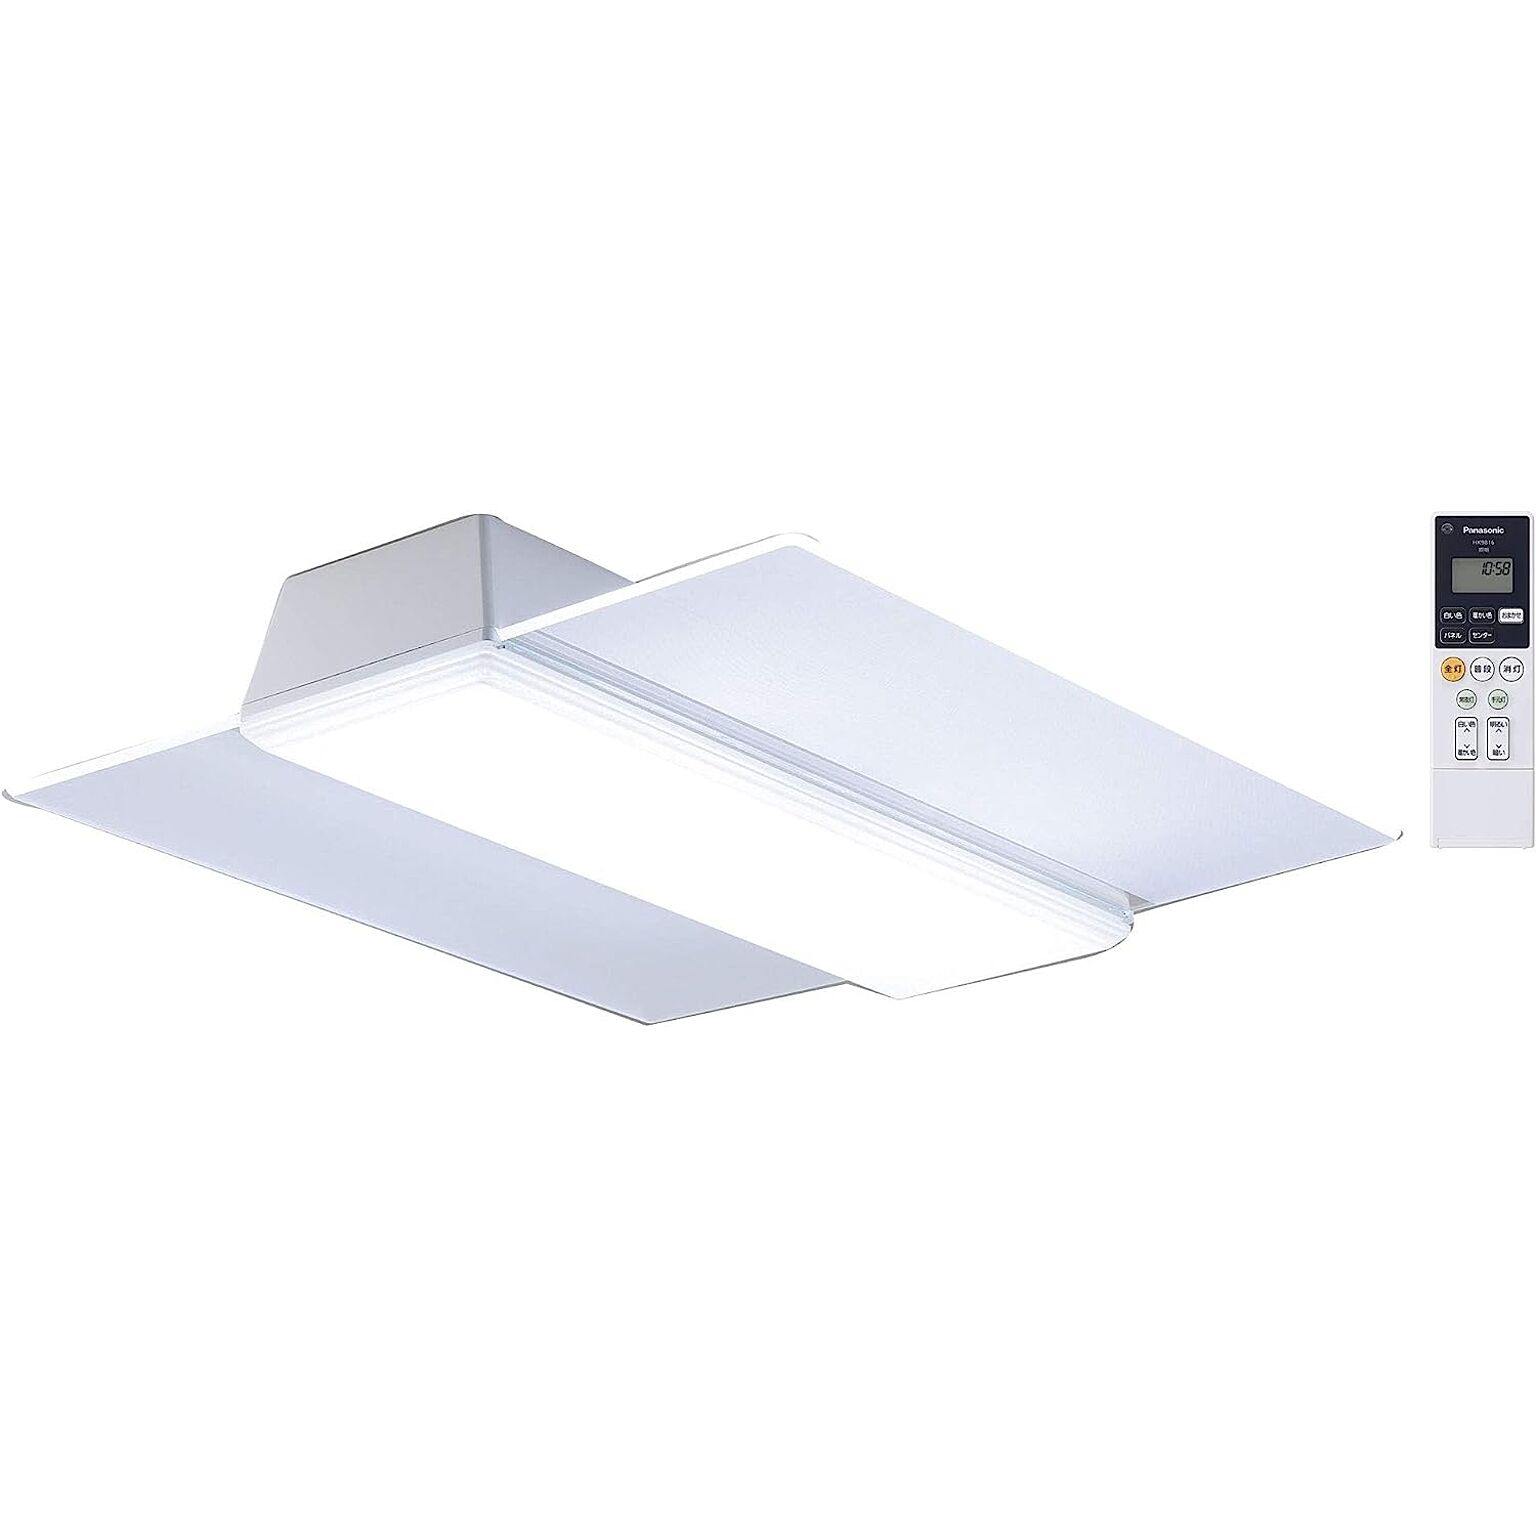 パナソニック LEDシーリングライト AIR PANEL LED 調光・調色タイプ リモコン付 ~14畳 角型パネル HH-CF1496A